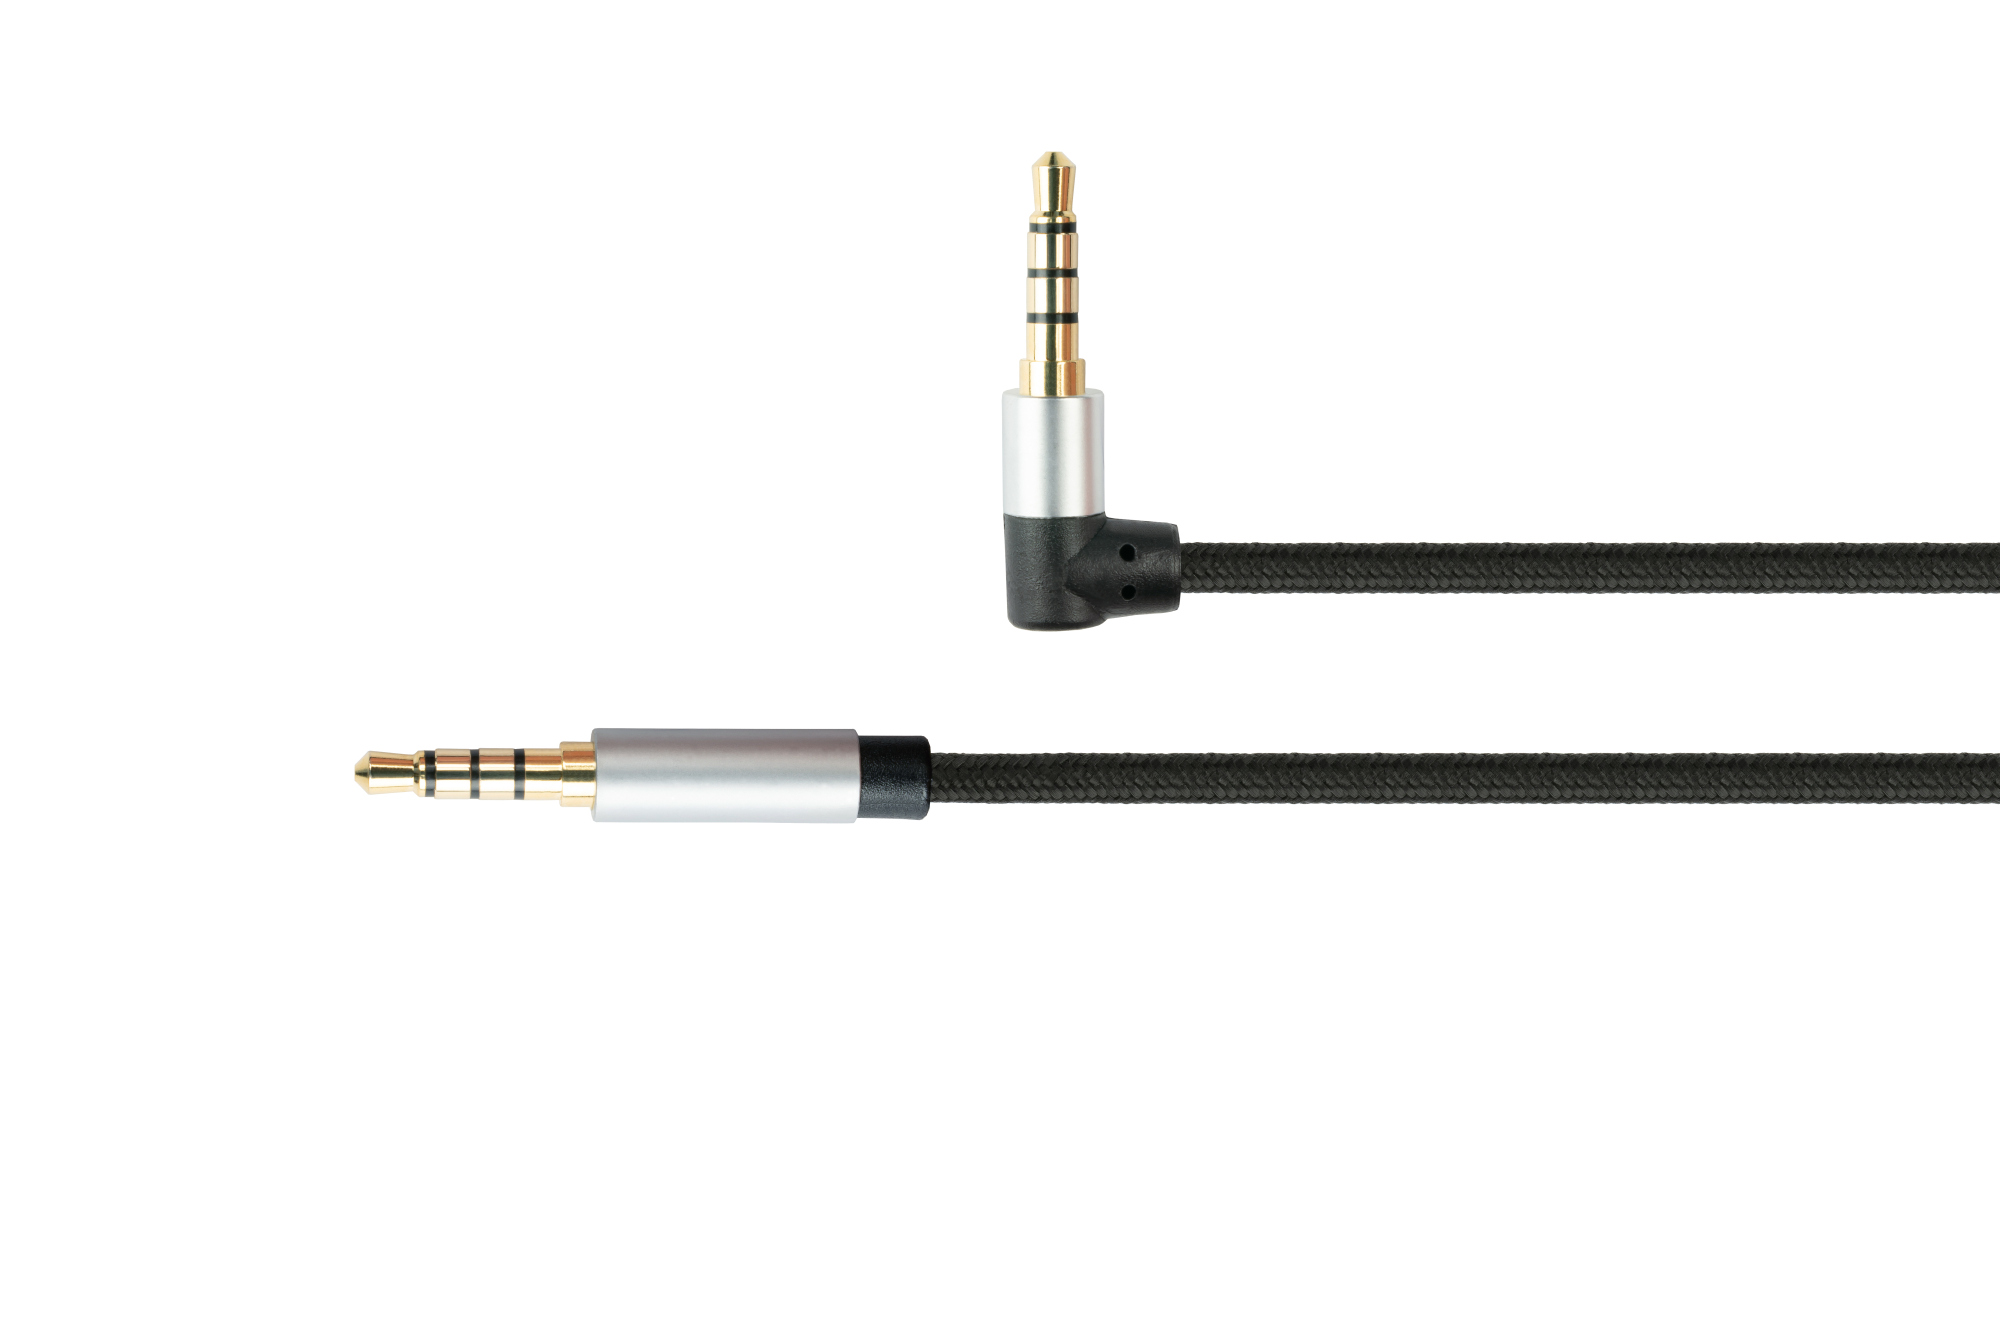 Audio Anschlusskabel High-Quality, 4-poliger 3,5mm Klinkenstecker an Klinkenstecker gewinkelt, Textilmantel, schwarz, 2m